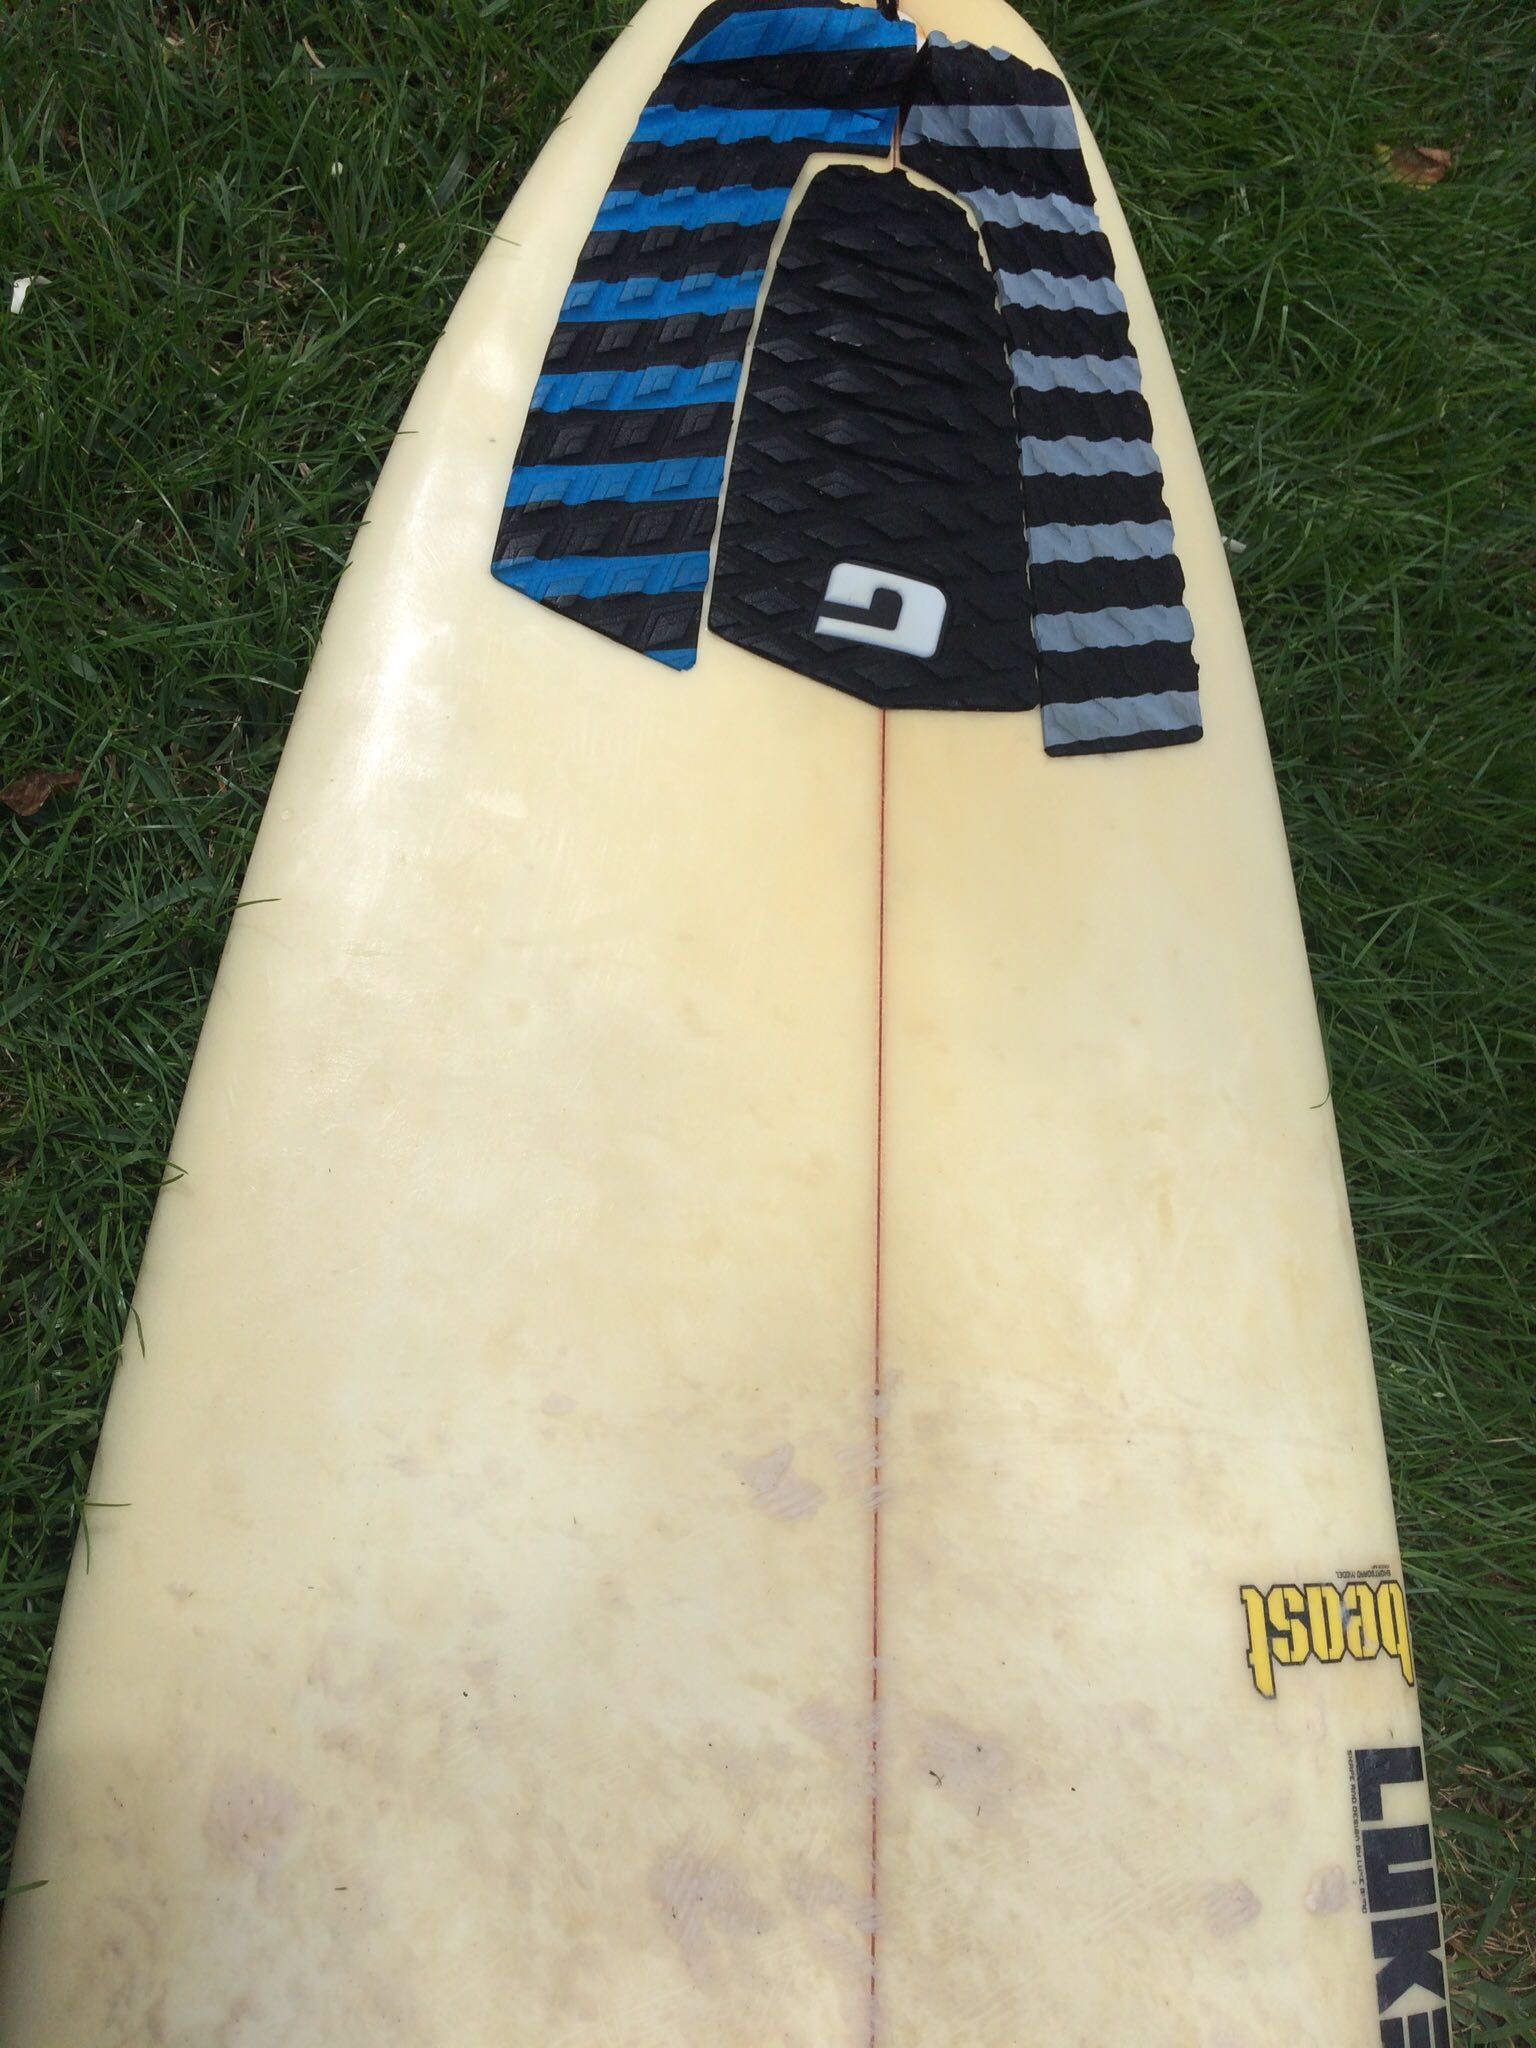 Prancha de Surf Boardculture 5’11 com quilhas